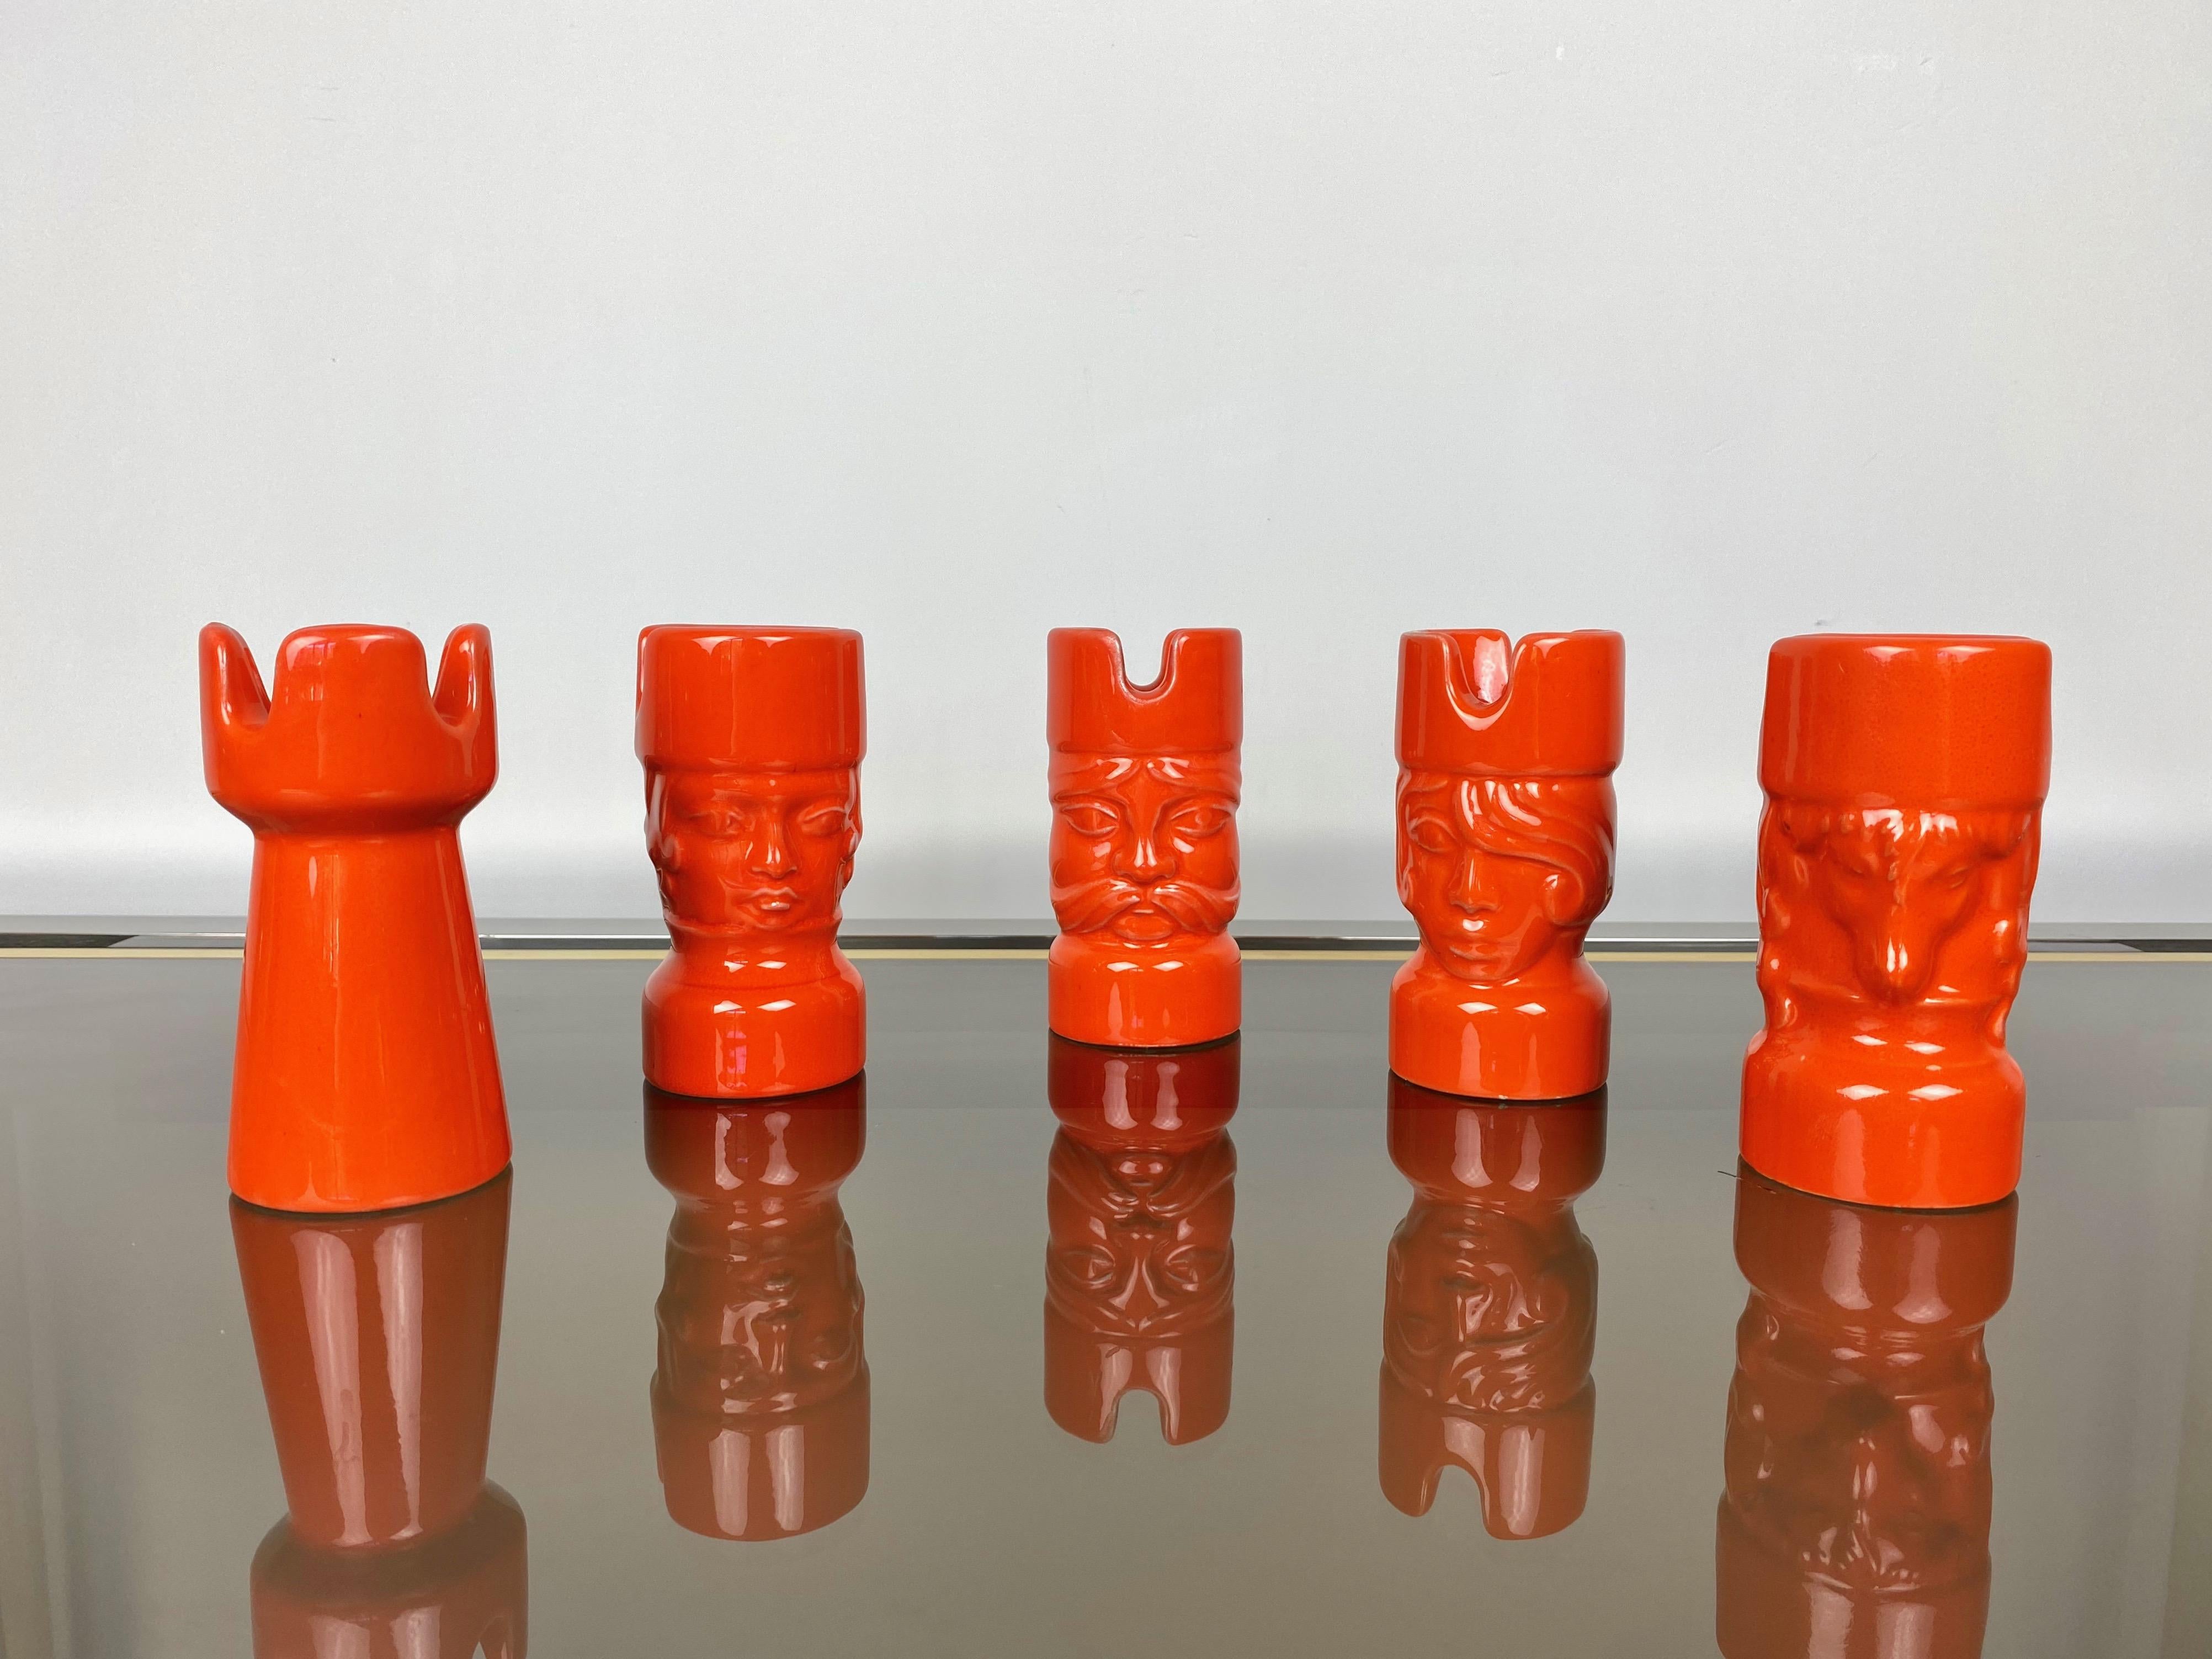 Italian Orange Ceramic Chess Pieces Sculpture by Il Picchio, Italy, 1970s For Sale